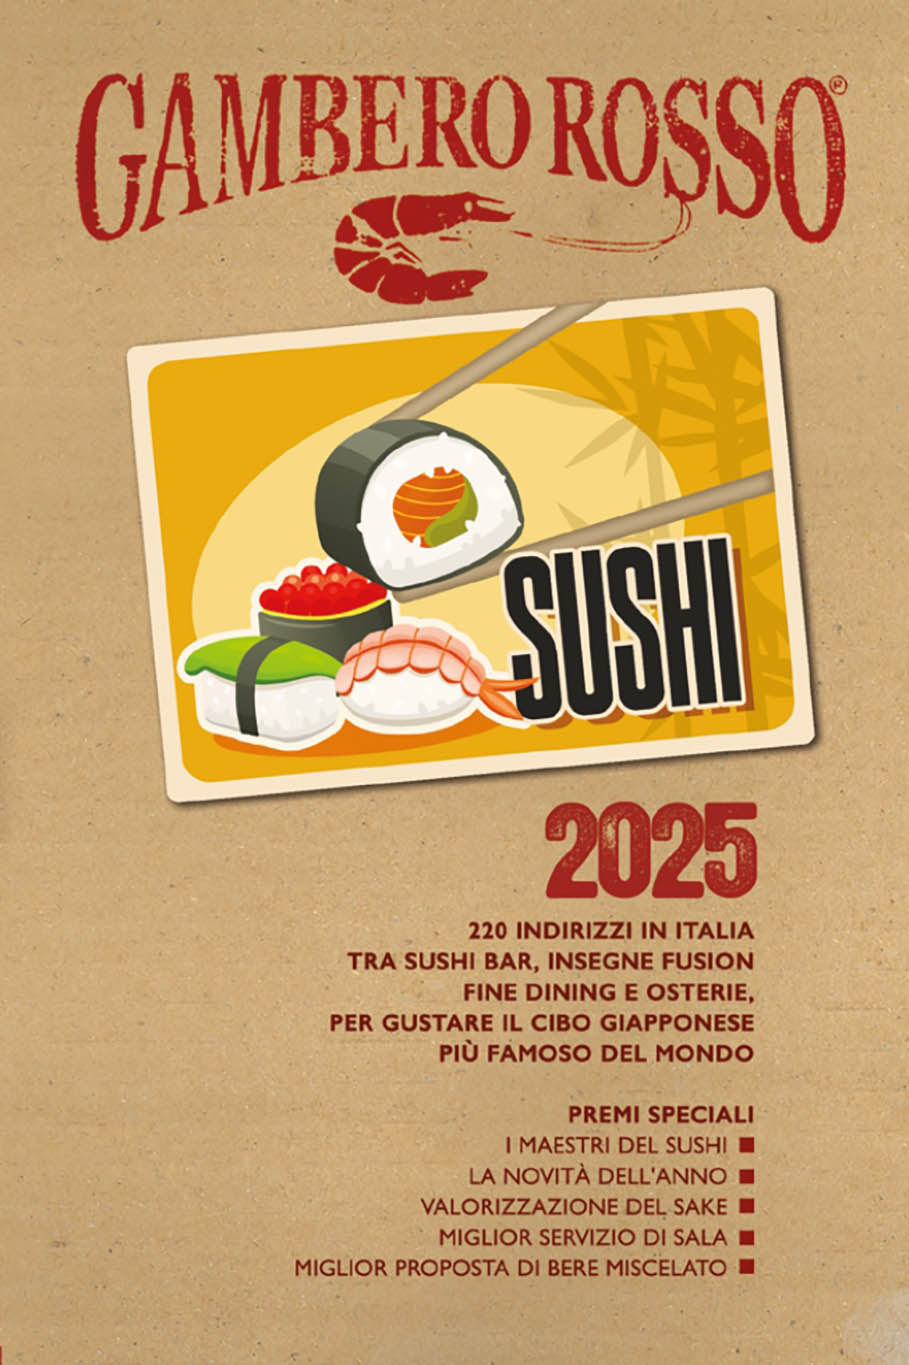 migliori sushi 2024 cover guida Gambero rosso 2025